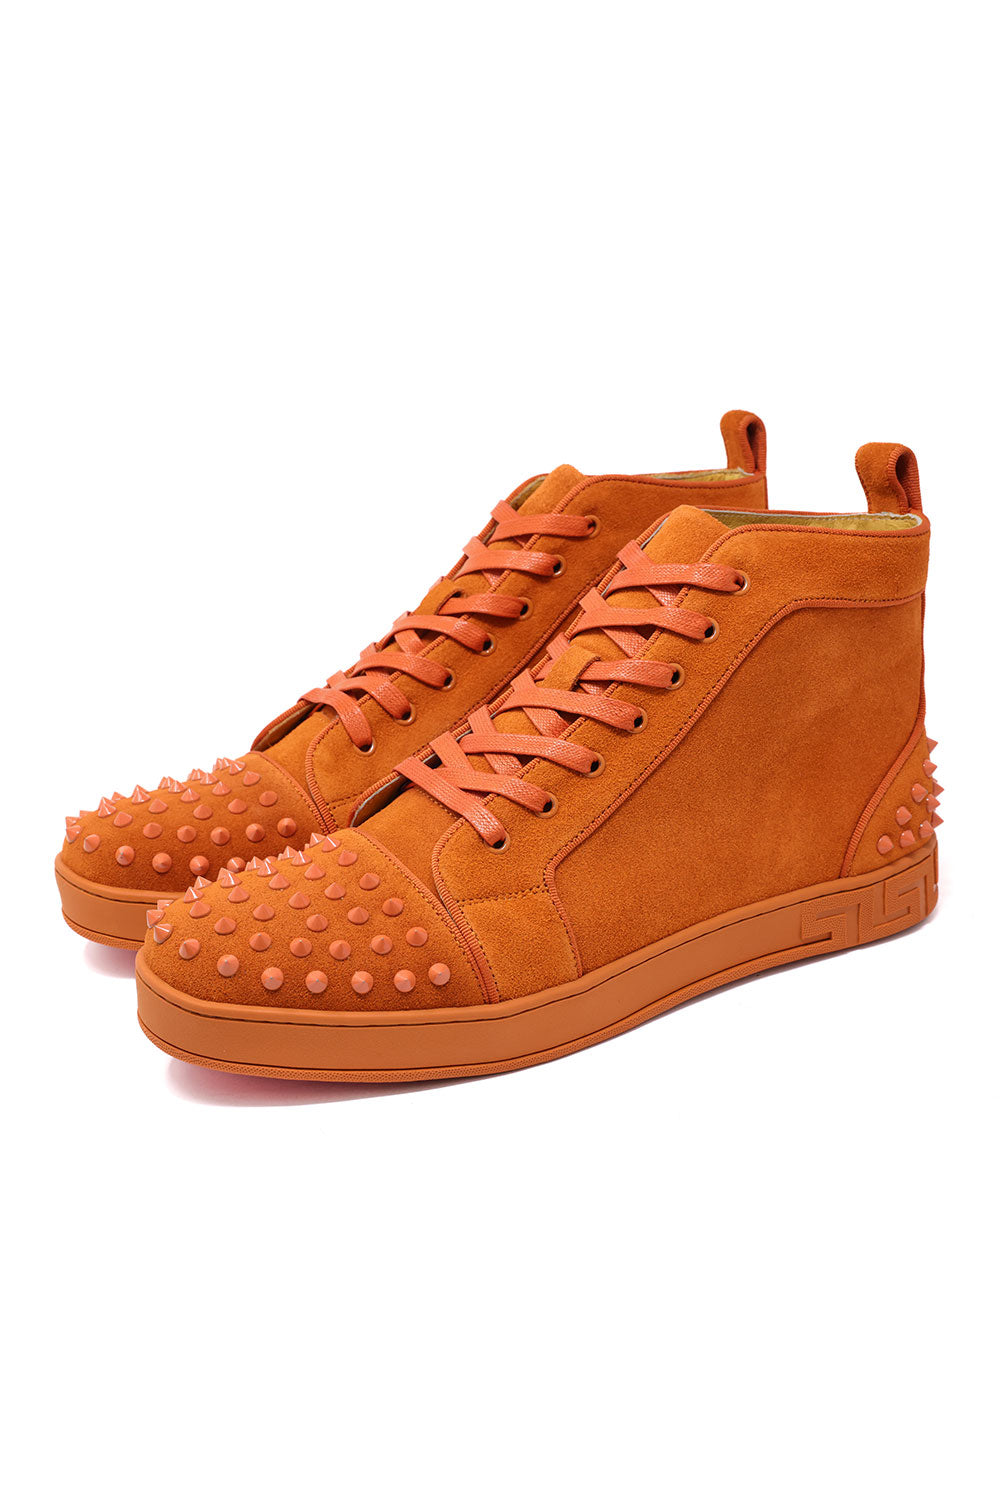 Barabas Men's Spike Design Luxury Suede High-Top Sneaker SH732 Rust